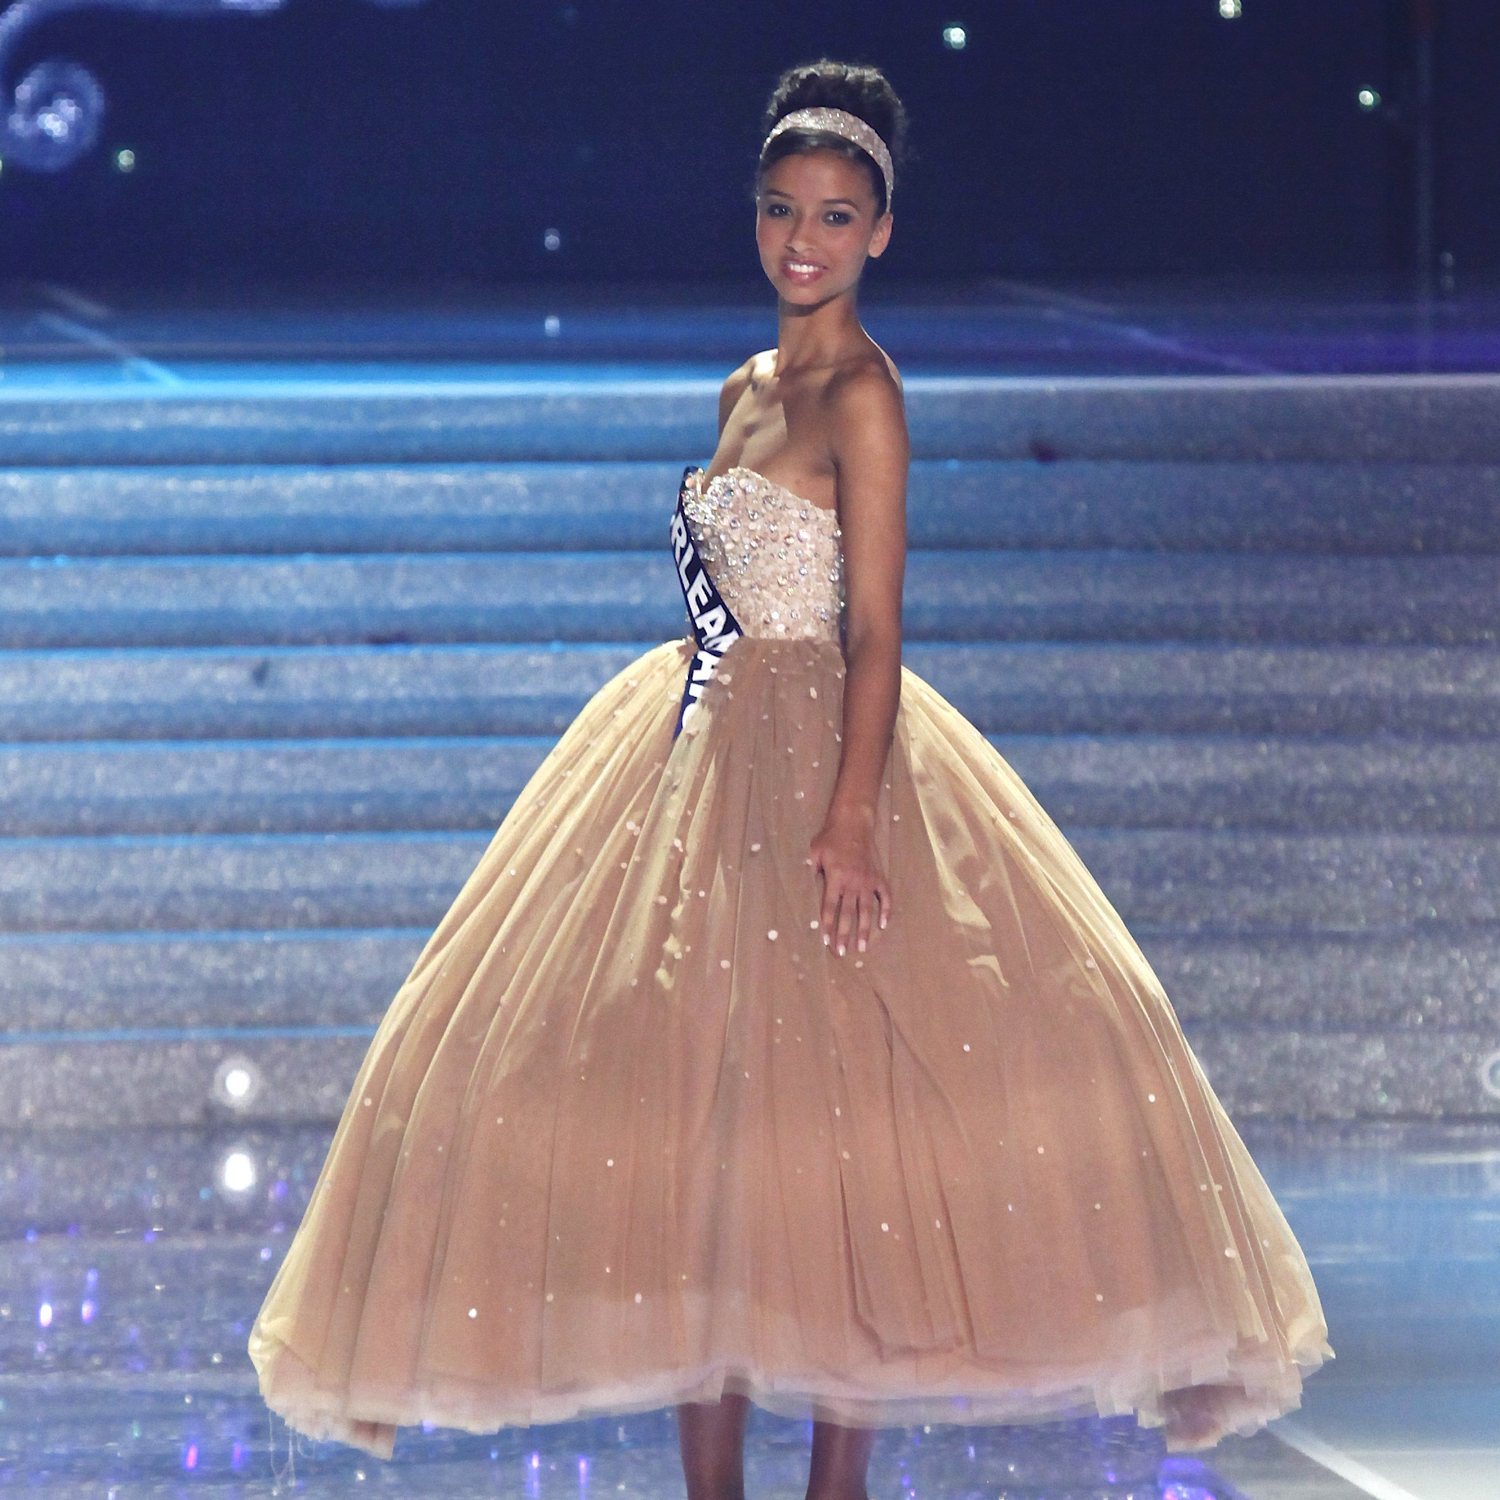 Miss France 2014, Flora Coquerel choisie